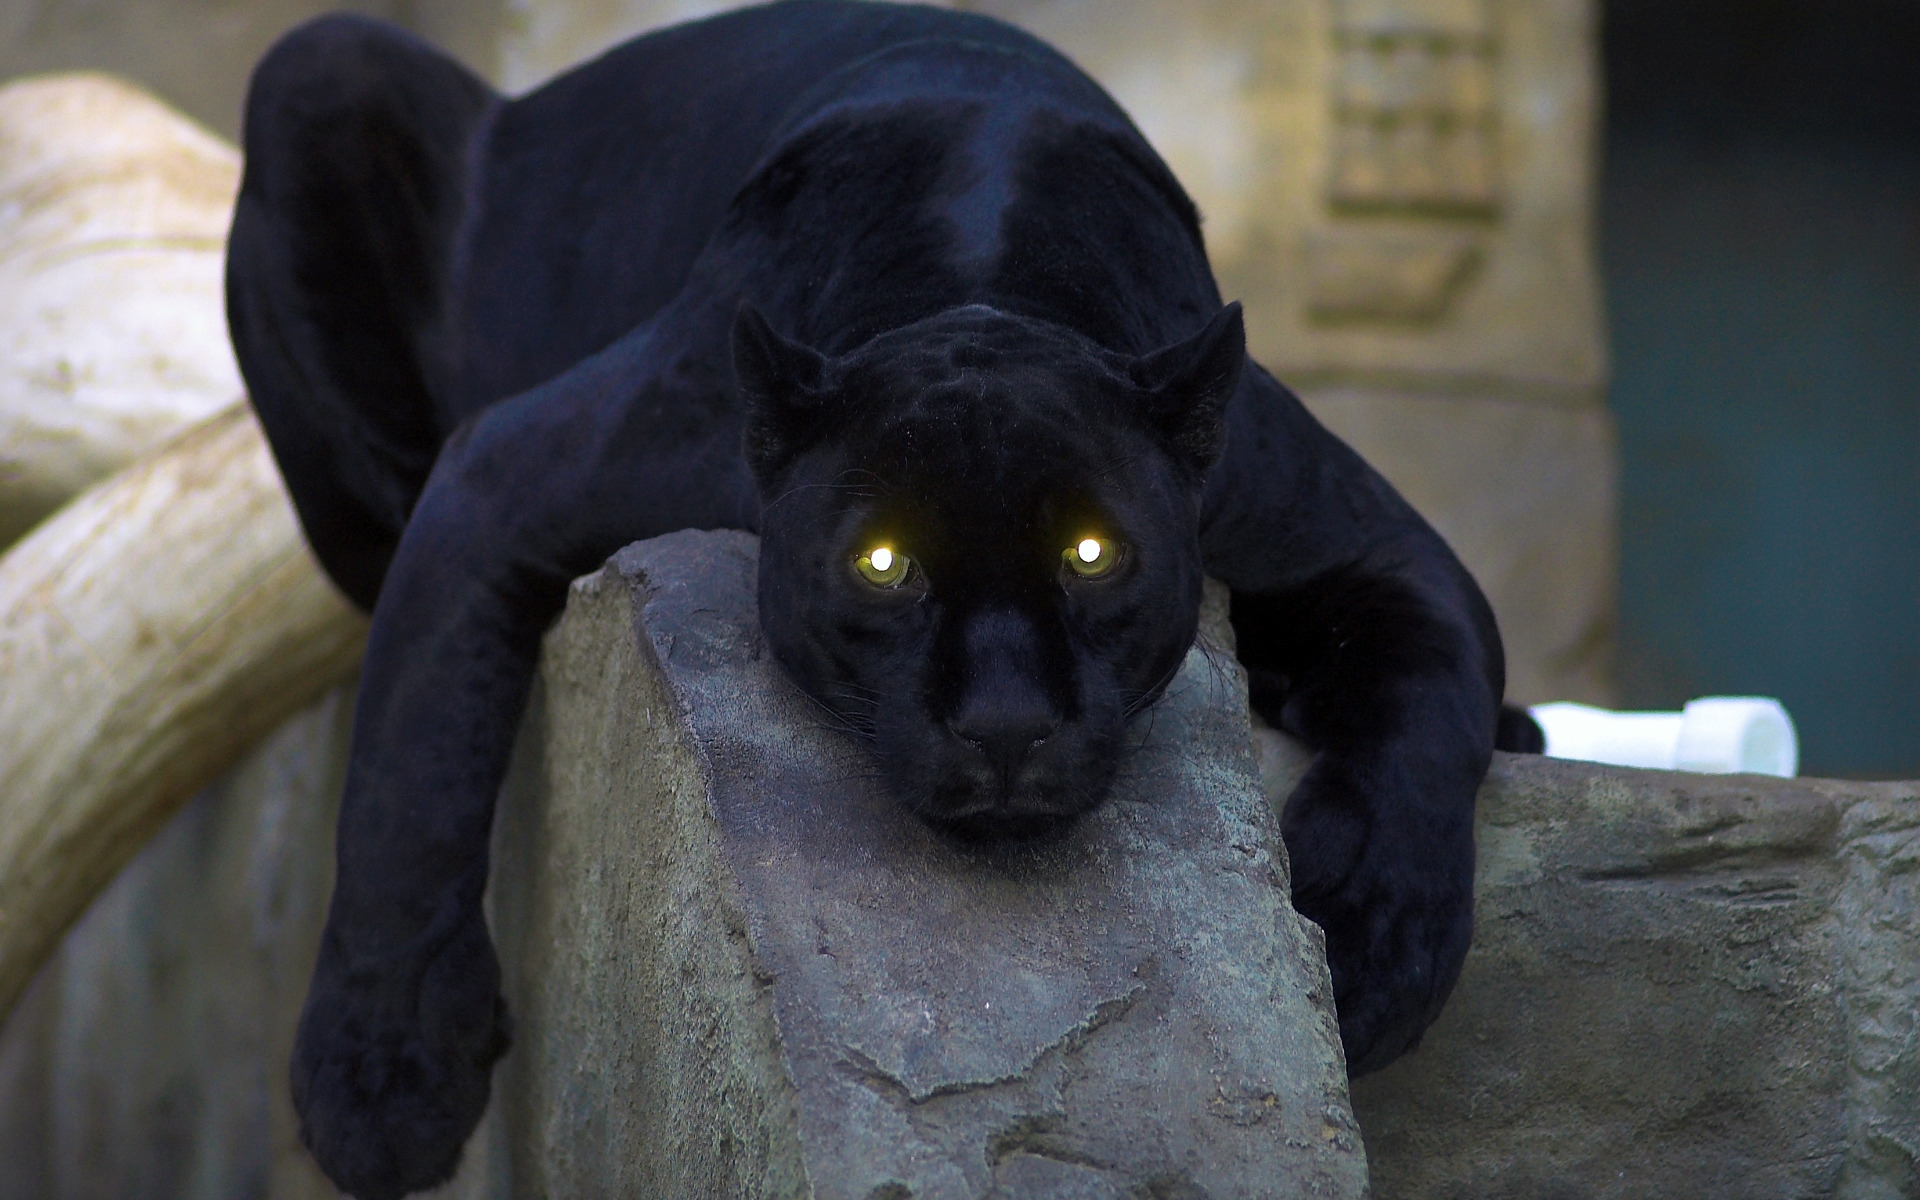 Black panther in a mesmerizing pose, set as a stunning desktop wallpaper.